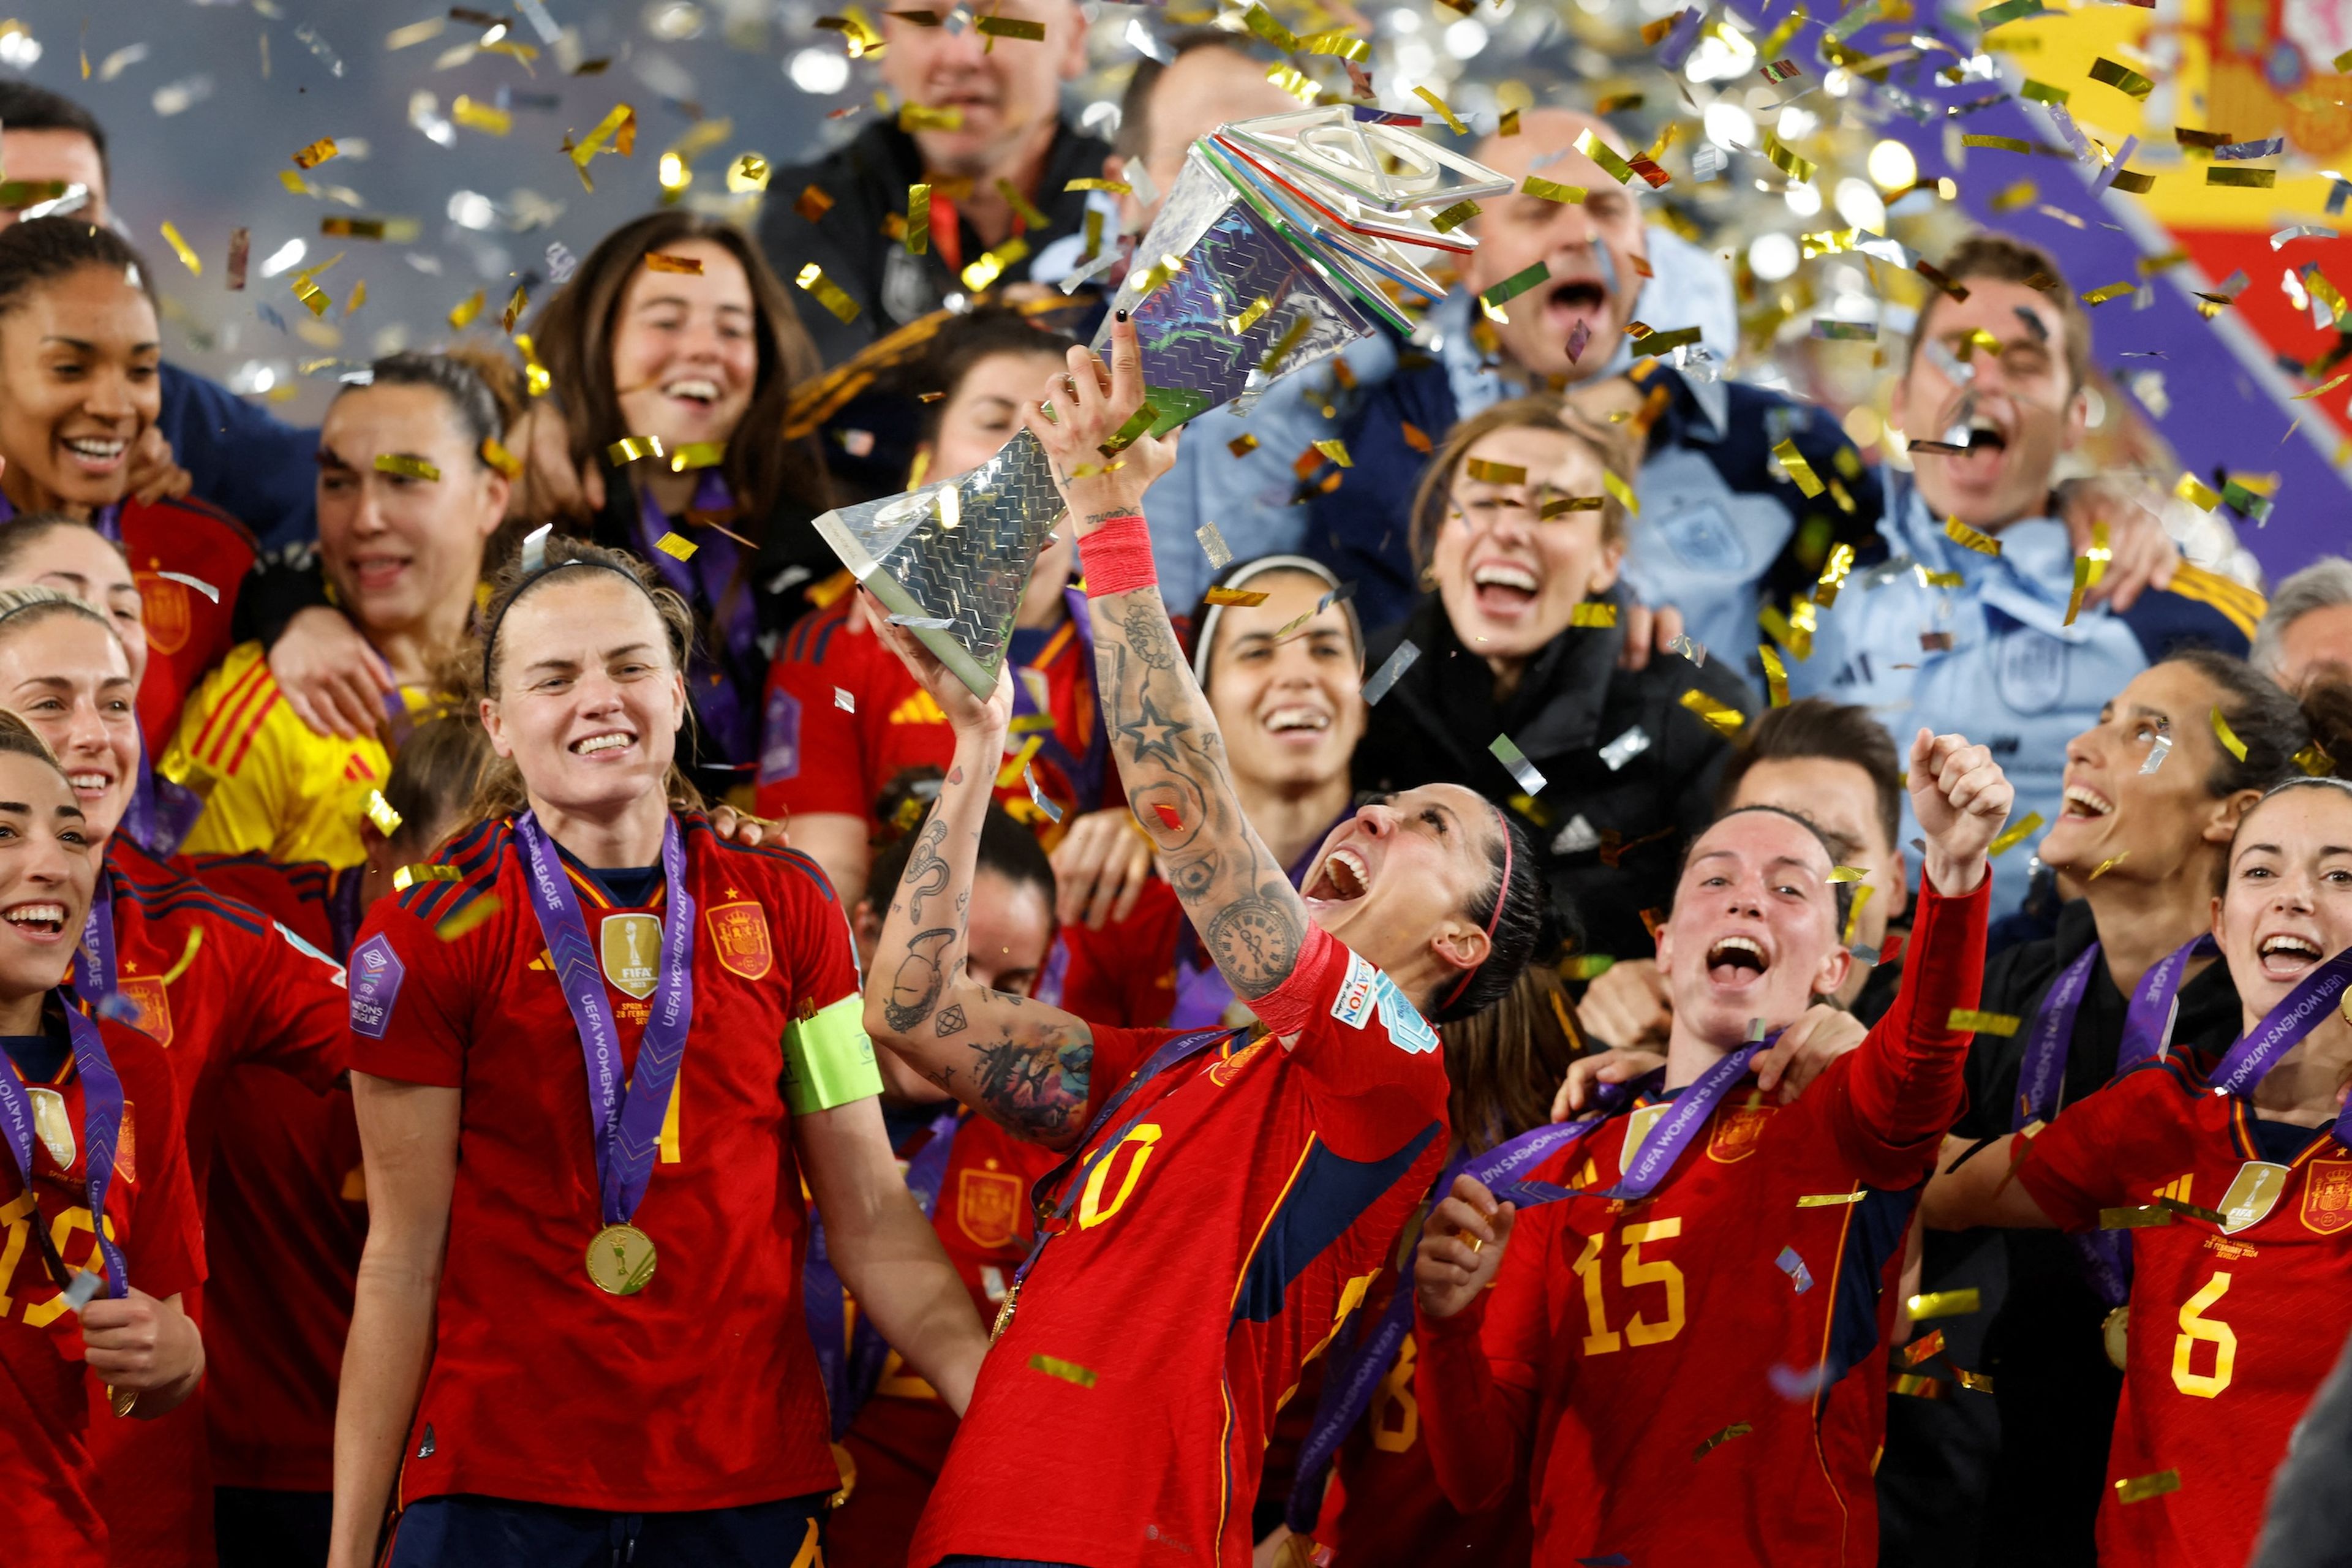 La foto del día: La selección femenina de fútbol conquistó ayer la Liga de Naciones tras derrotar a Francia (2-0) en el estadio de La Cartuja, en Sevilla, solo 6 meses después de ganar el Mundial. En la foto, Jennifer Hermoso levanta la copa.